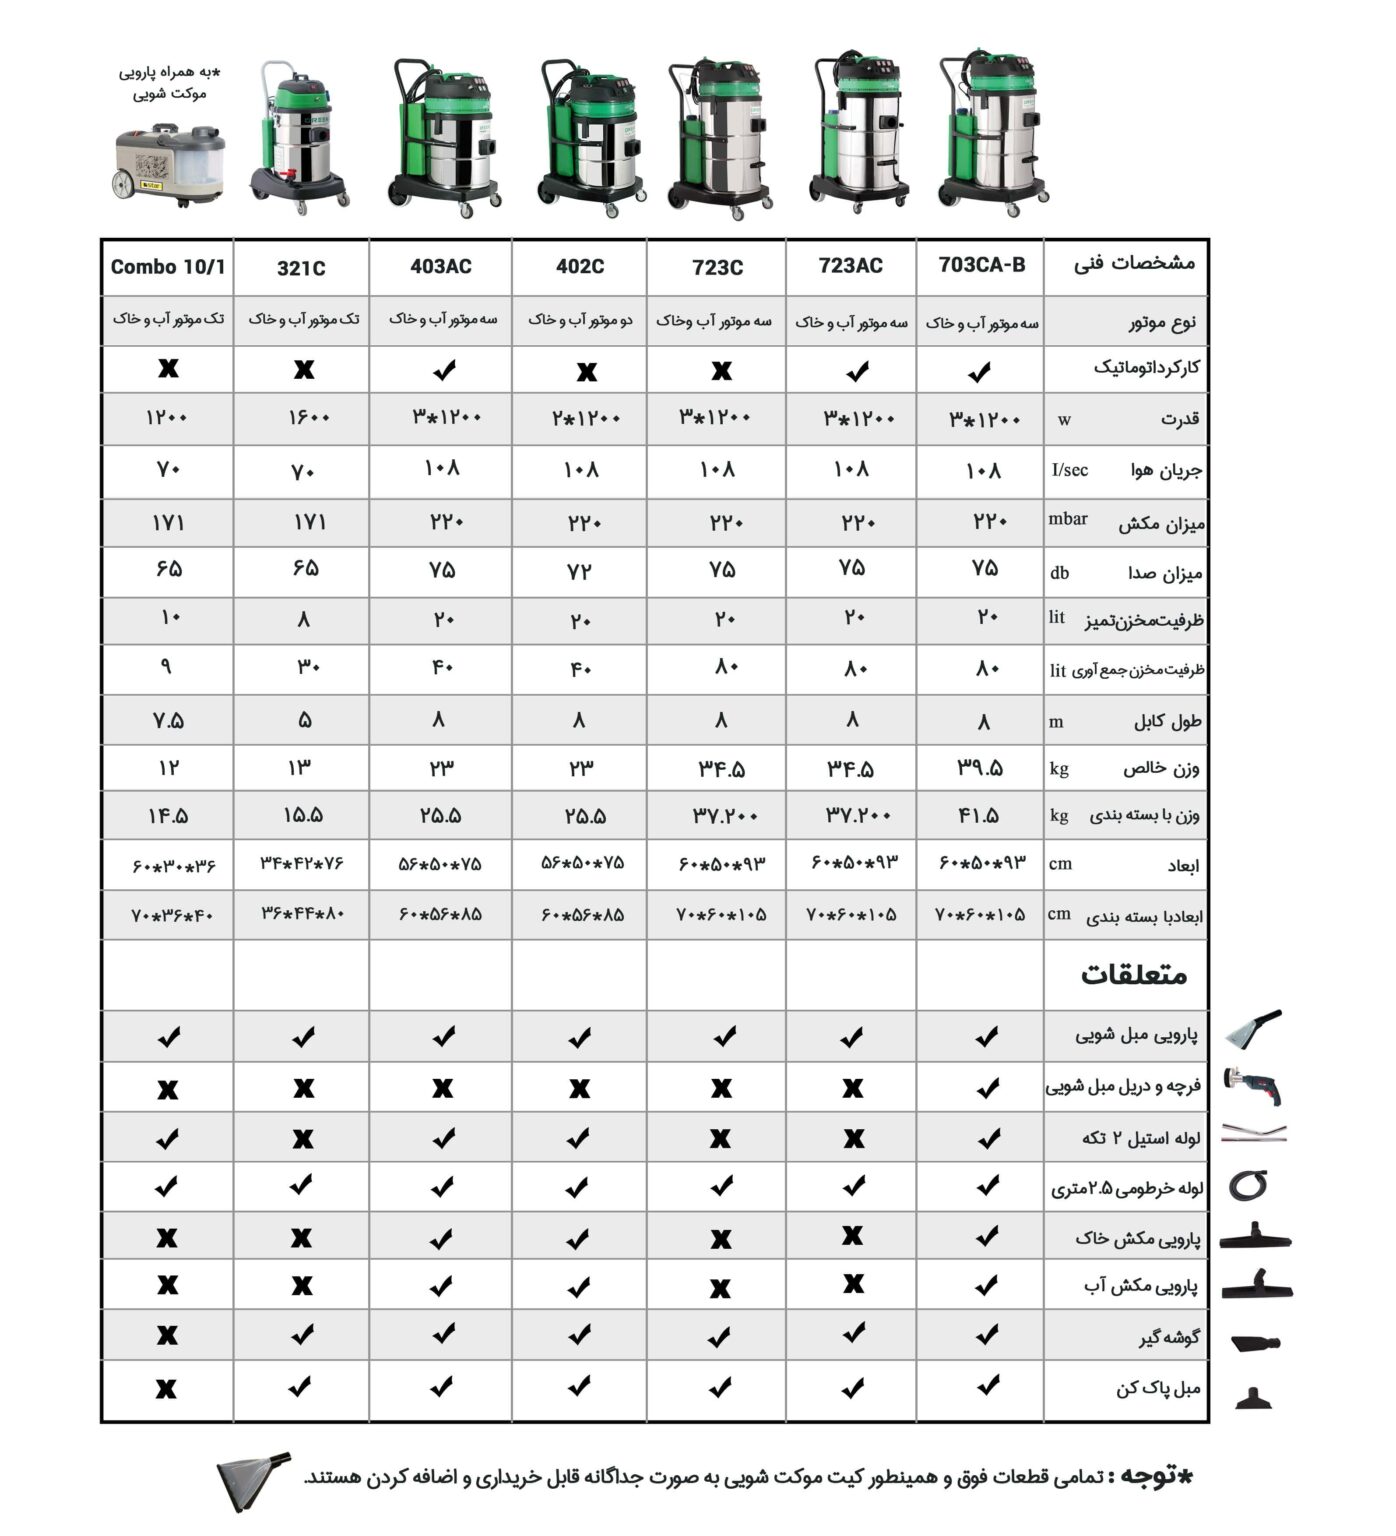 جدول مشخصات مبل شوی صنعتی Green703 CA-B